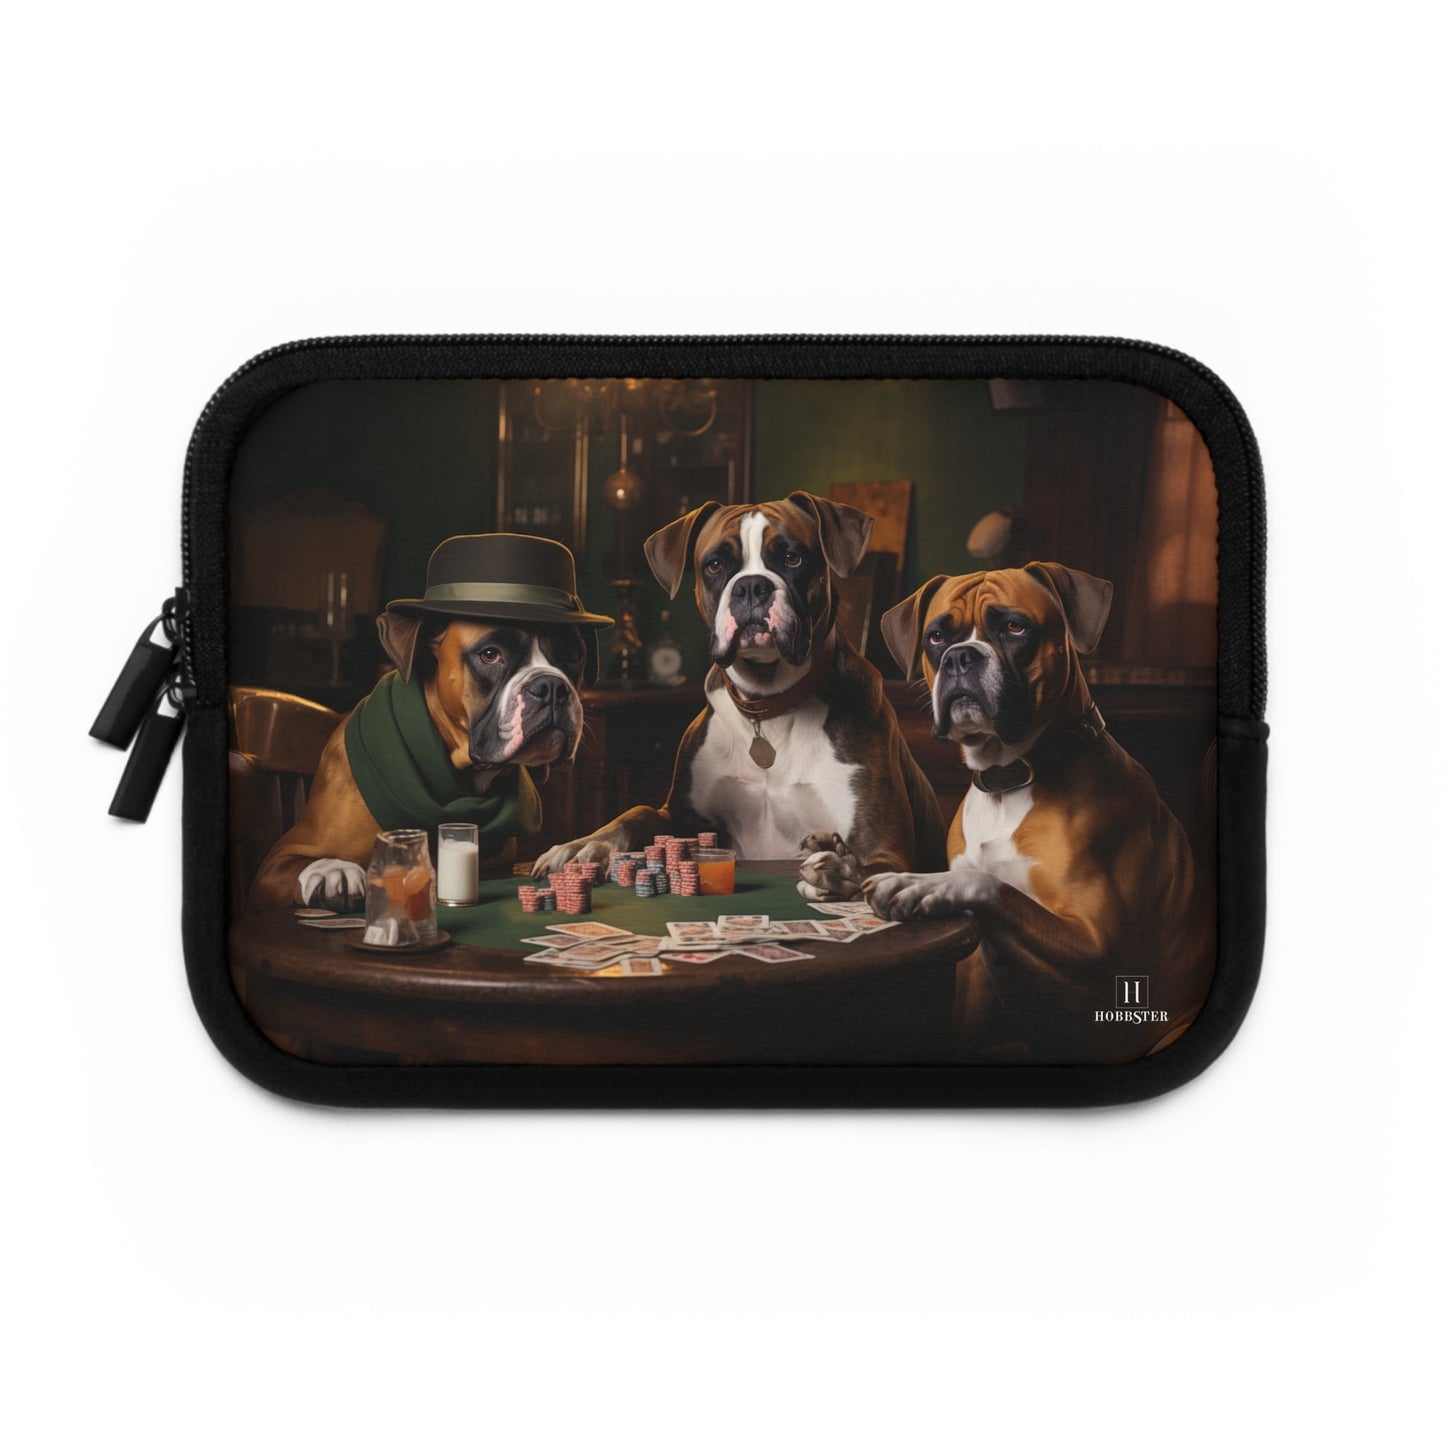 Custom Neoprene Laptop Sleeve featuring Boxer dog design - Hobbster